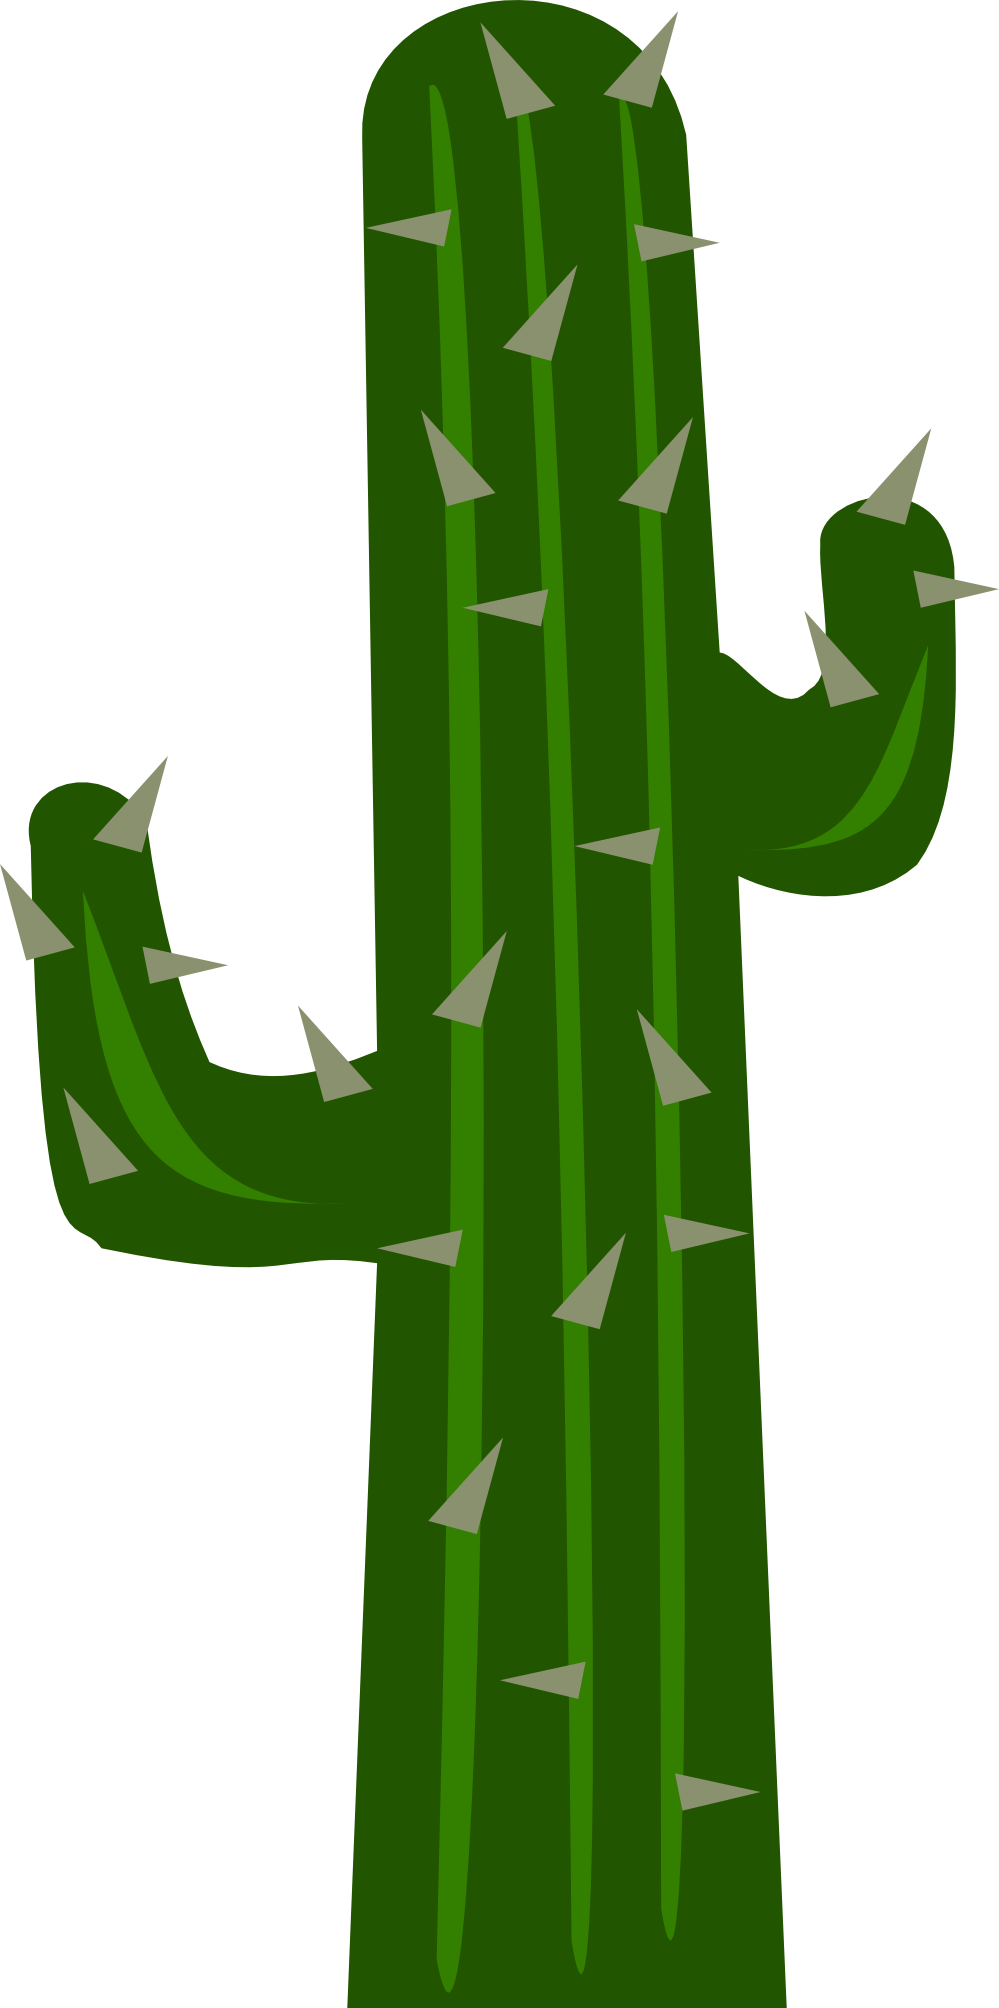 Cactus Cartoon Images - ClipArt Best